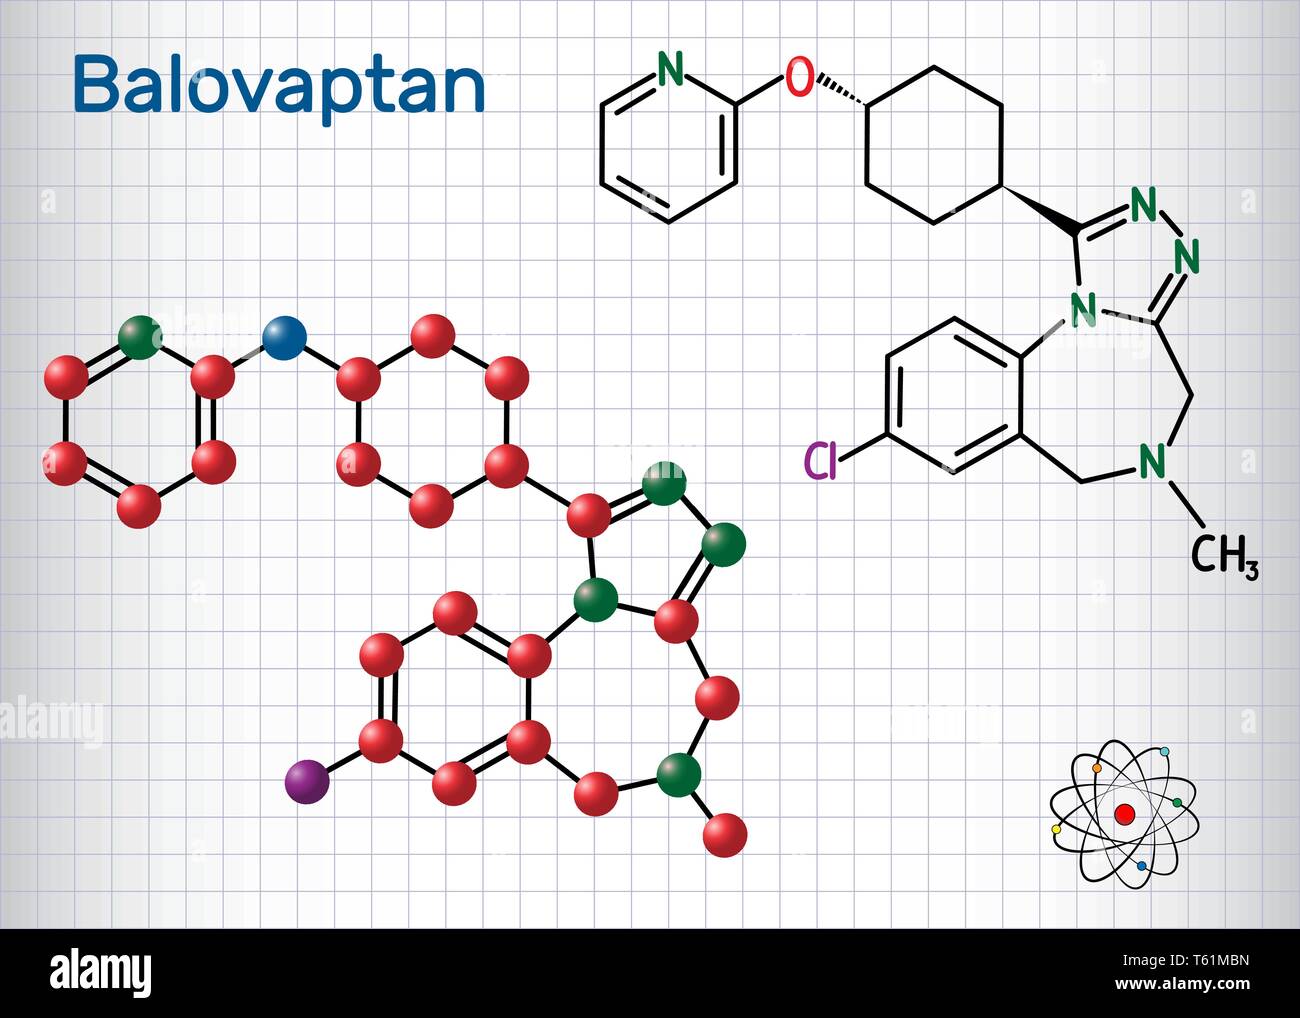 Balovaptan Molekül. Ist Medikament für die Behandlung von Autismus. Strukturelle chemische Formel und Molekül-Modell. Blatt Papier in einem Käfig. Vektor illustratio Stock Vektor